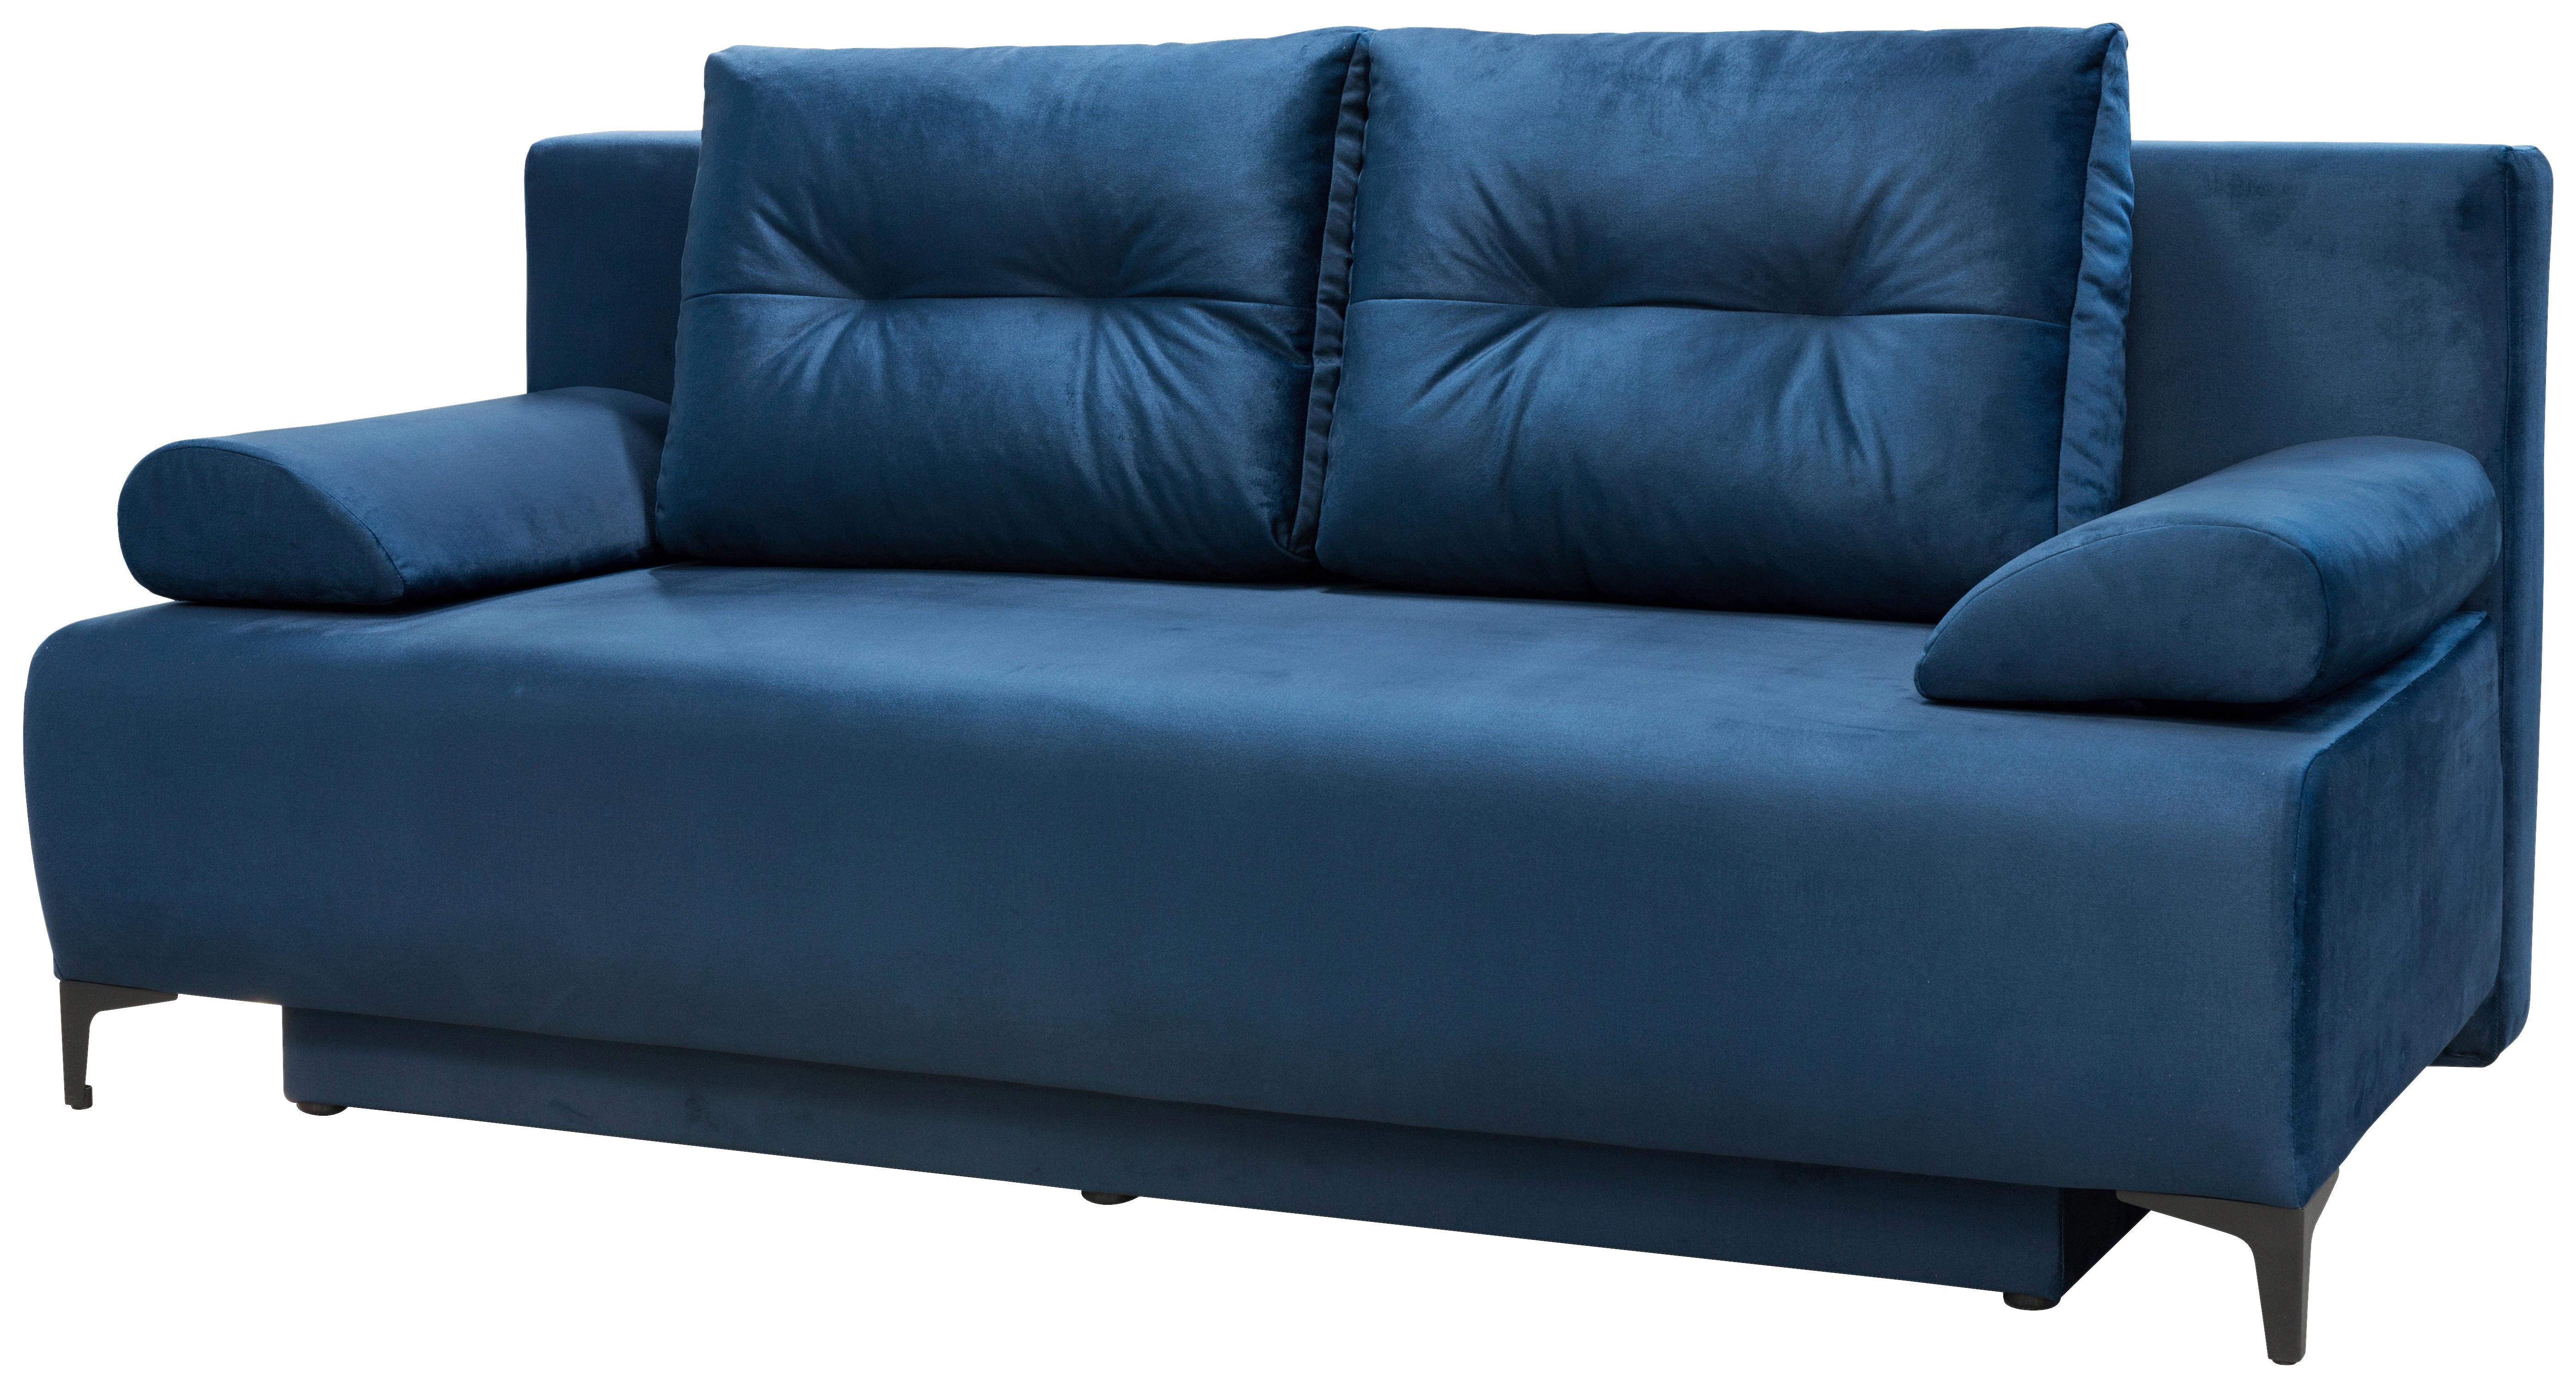 Canapea extensibilă VIERA - albastru închis, Modern, textil (201/100/105cm)